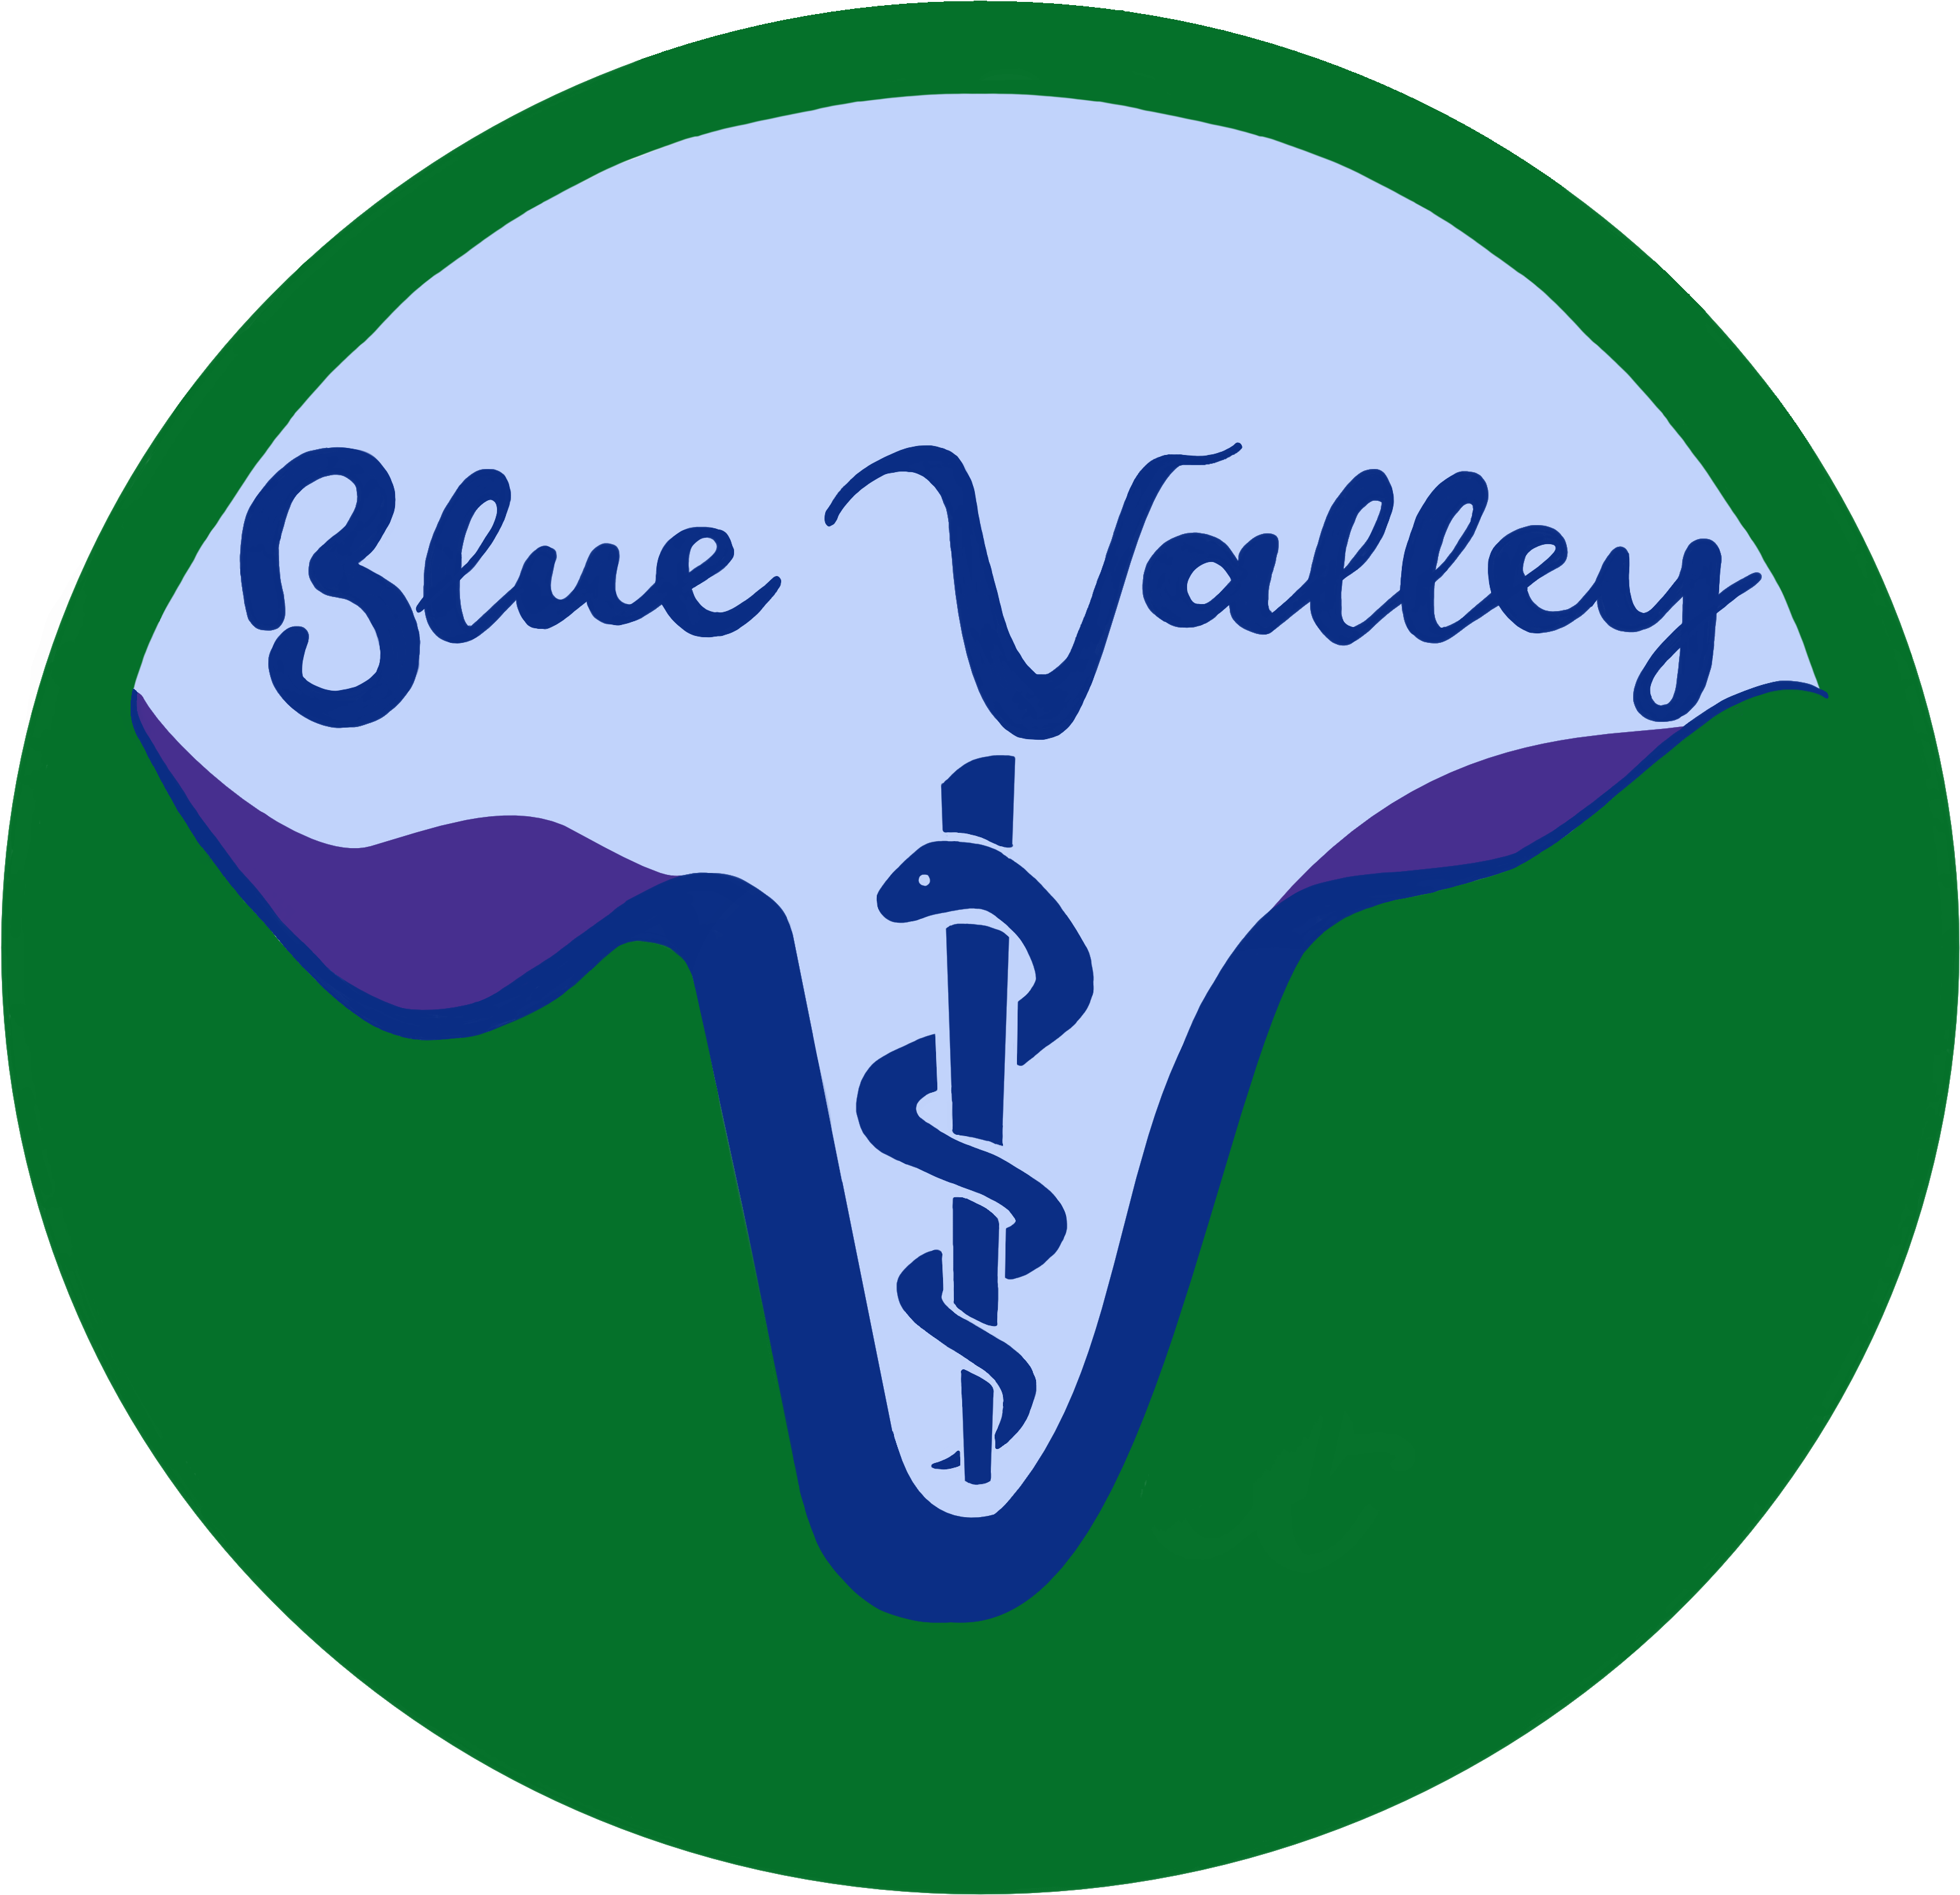 Blue Valley Vet - Blue Valley Vet (3147x3112)